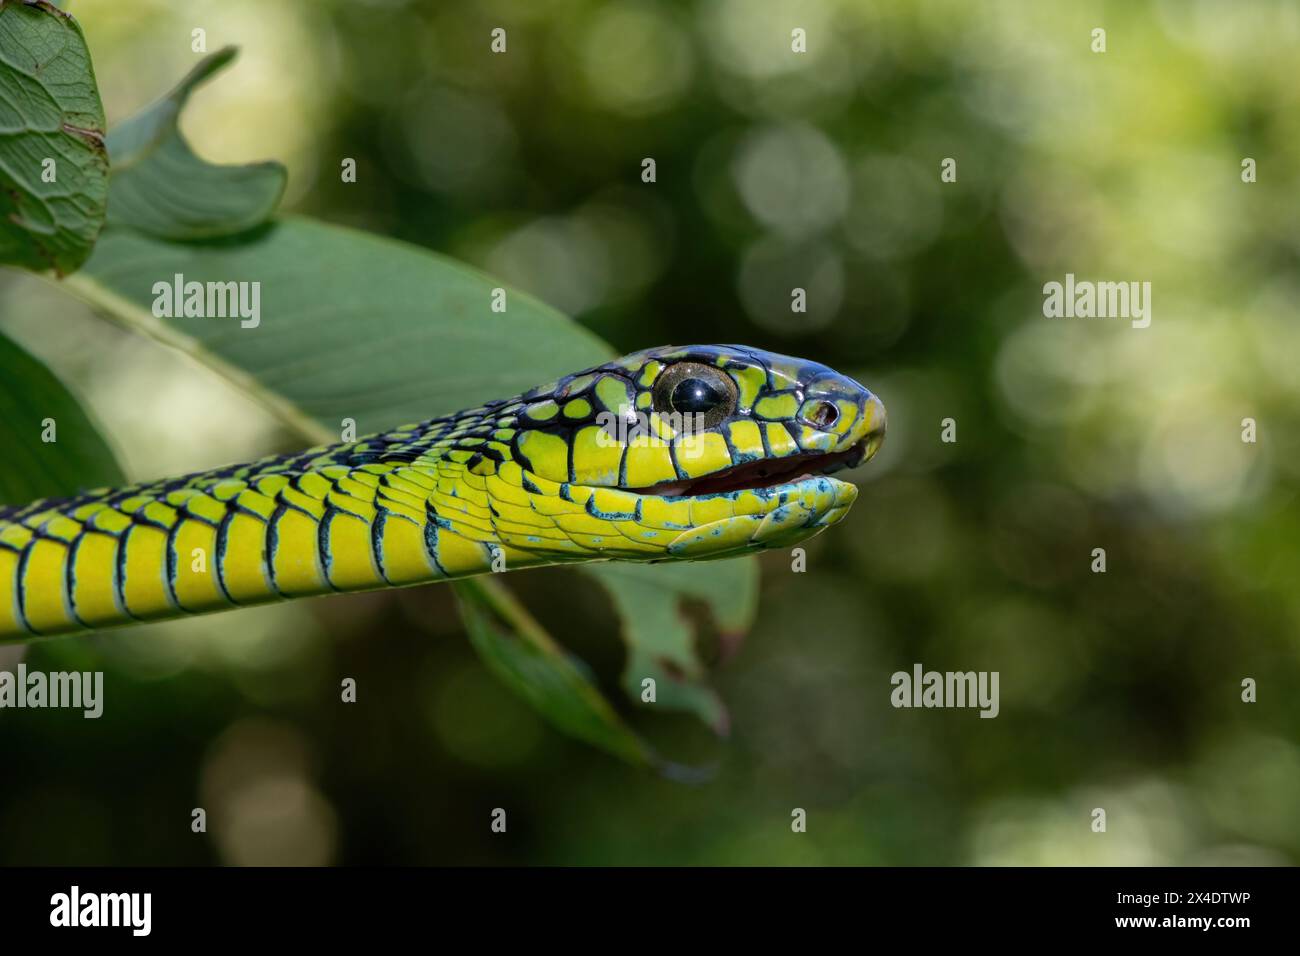 Les couleurs vives d'un boomslang mâle adulte très venimeux (Dispholidus typus), également connu sous le nom de serpent d'arbre ou serpent d'arbre africain Banque D'Images